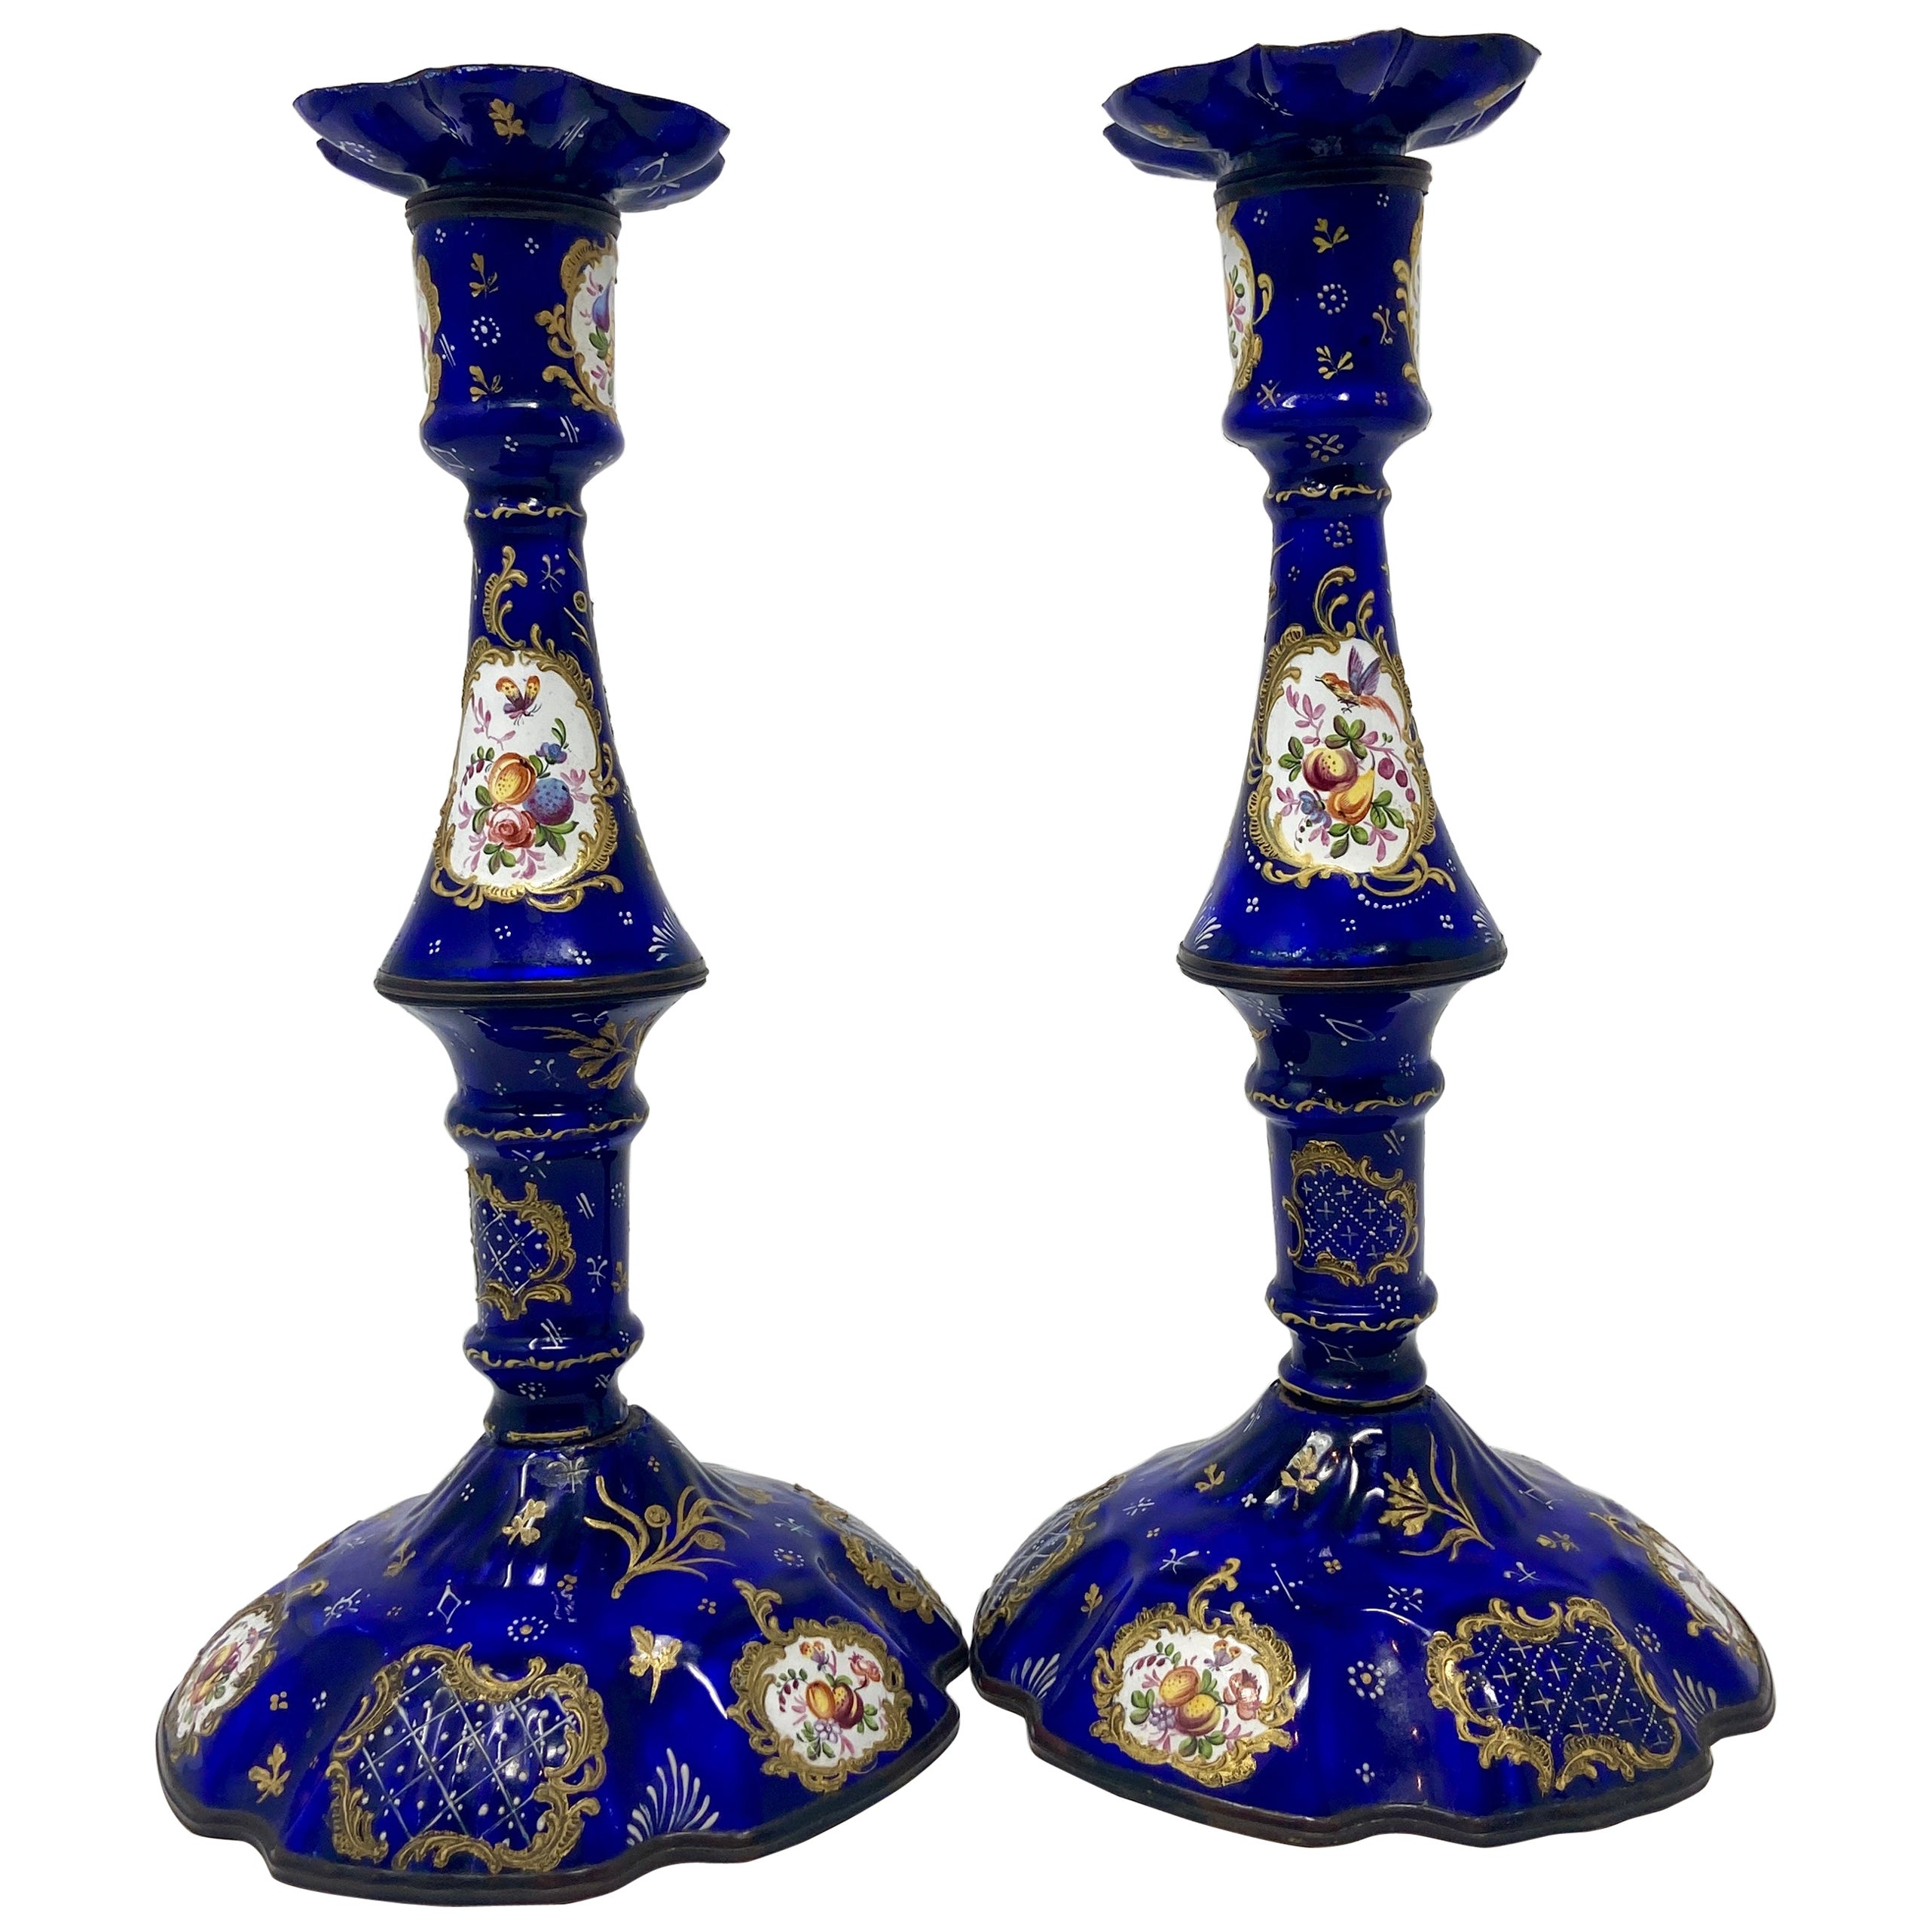 Paire de chandeliers français anciens en porcelaine émaillée bleue peintes à la main vers 1840